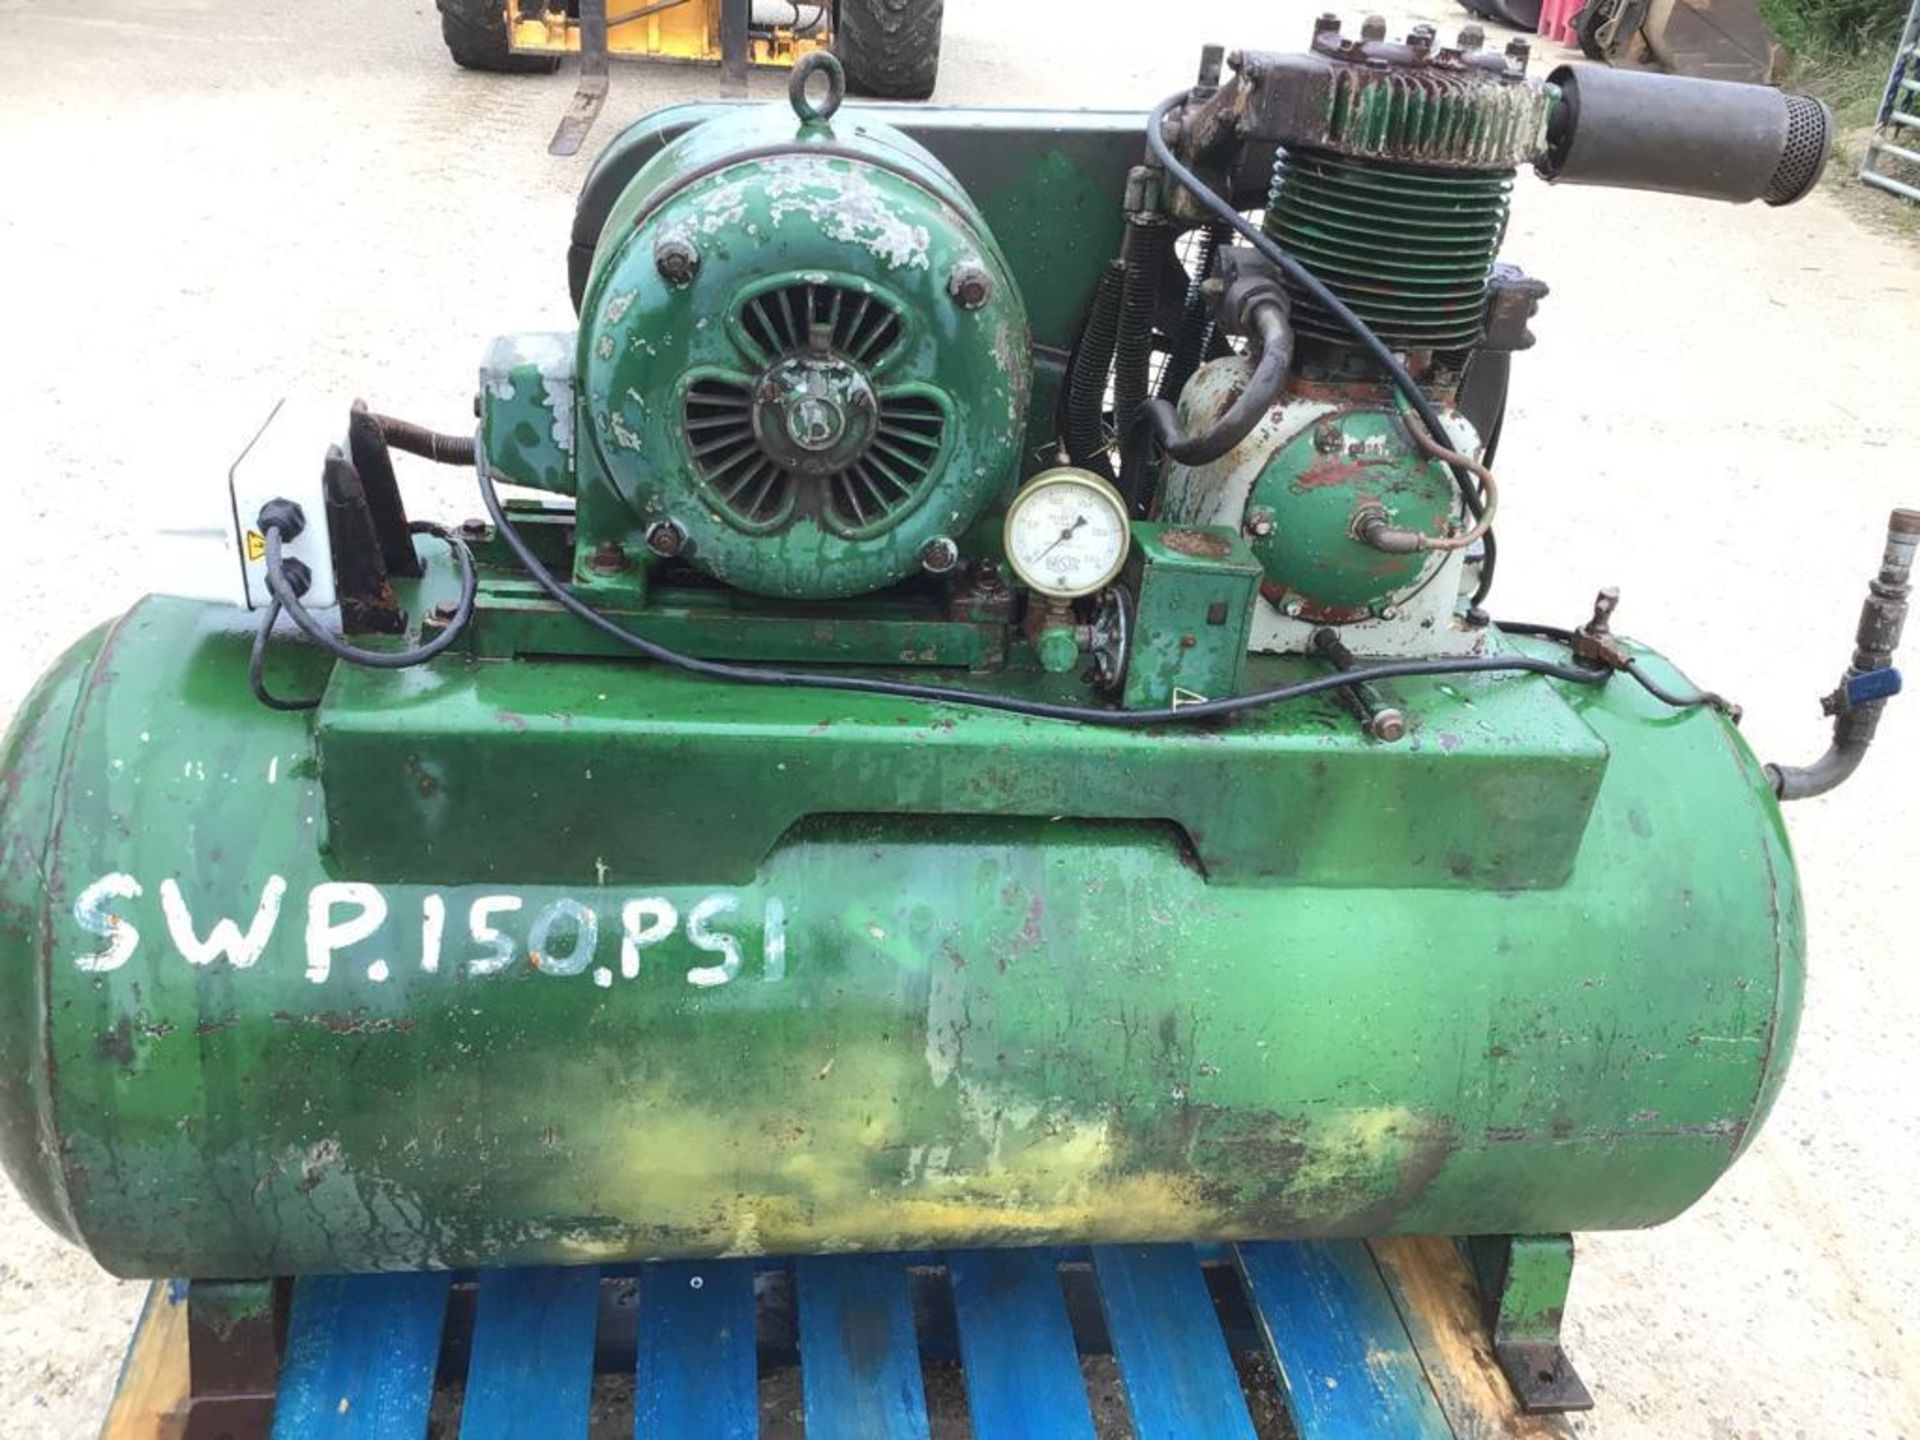 Workshop Compressor - Image 2 of 3